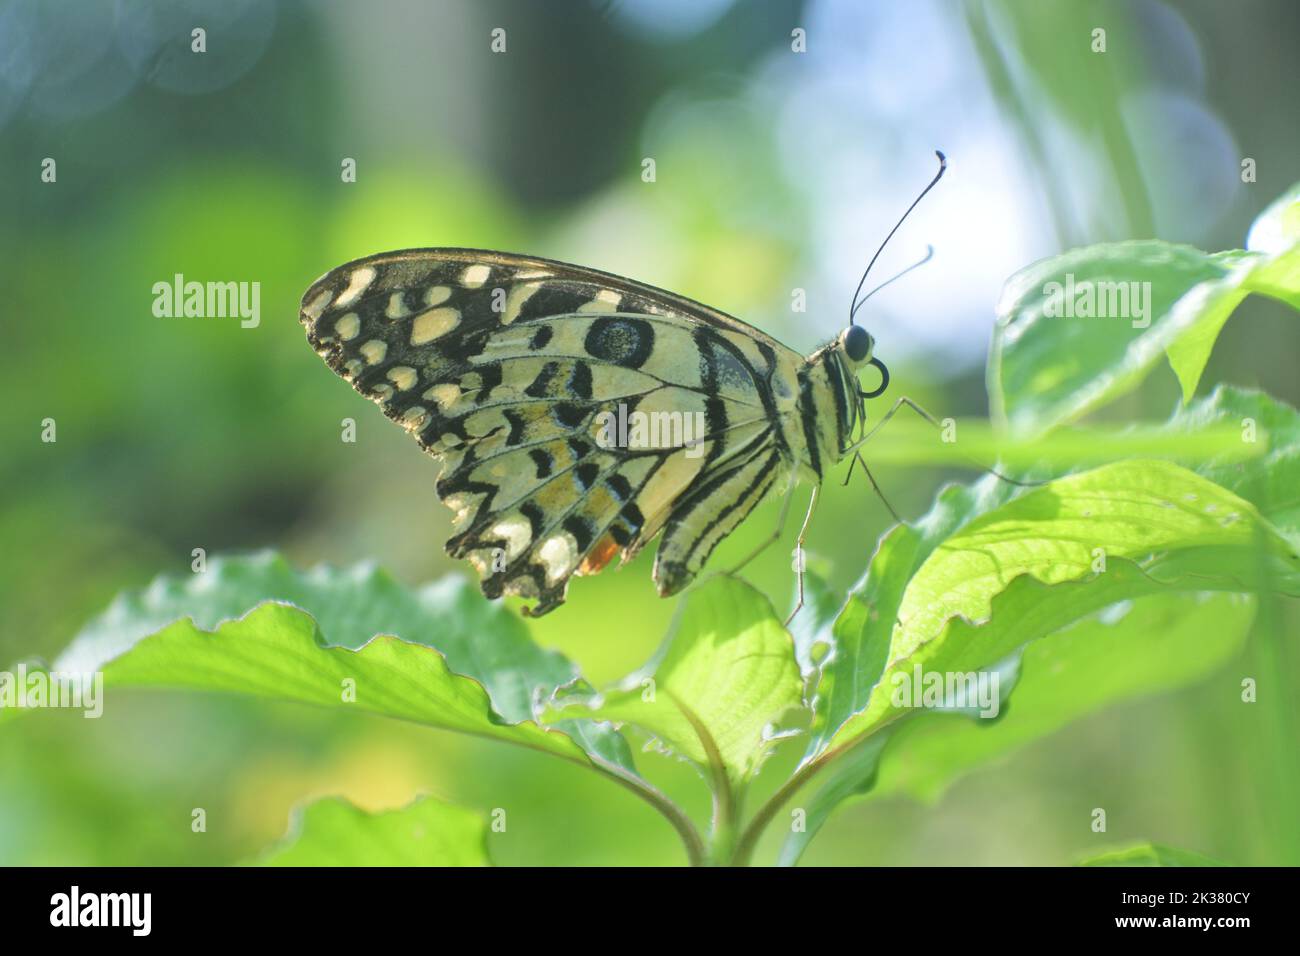 Primo piano di una farfalla calcarea a coda di rondine su una foglia verde di una pianta Foto Stock